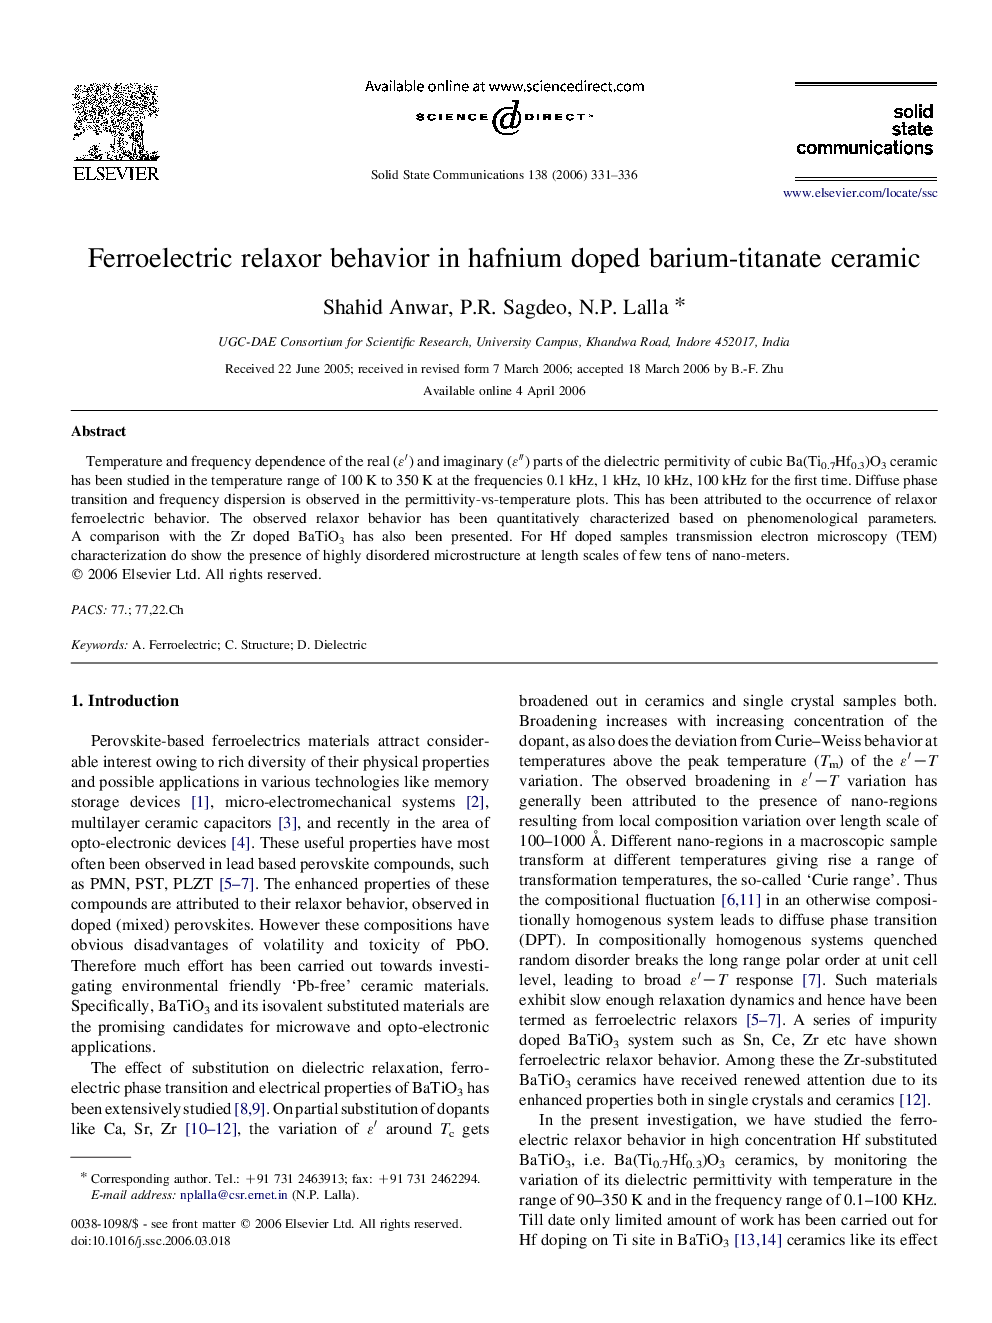 Ferroelectric relaxor behavior in hafnium doped barium-titanate ceramic